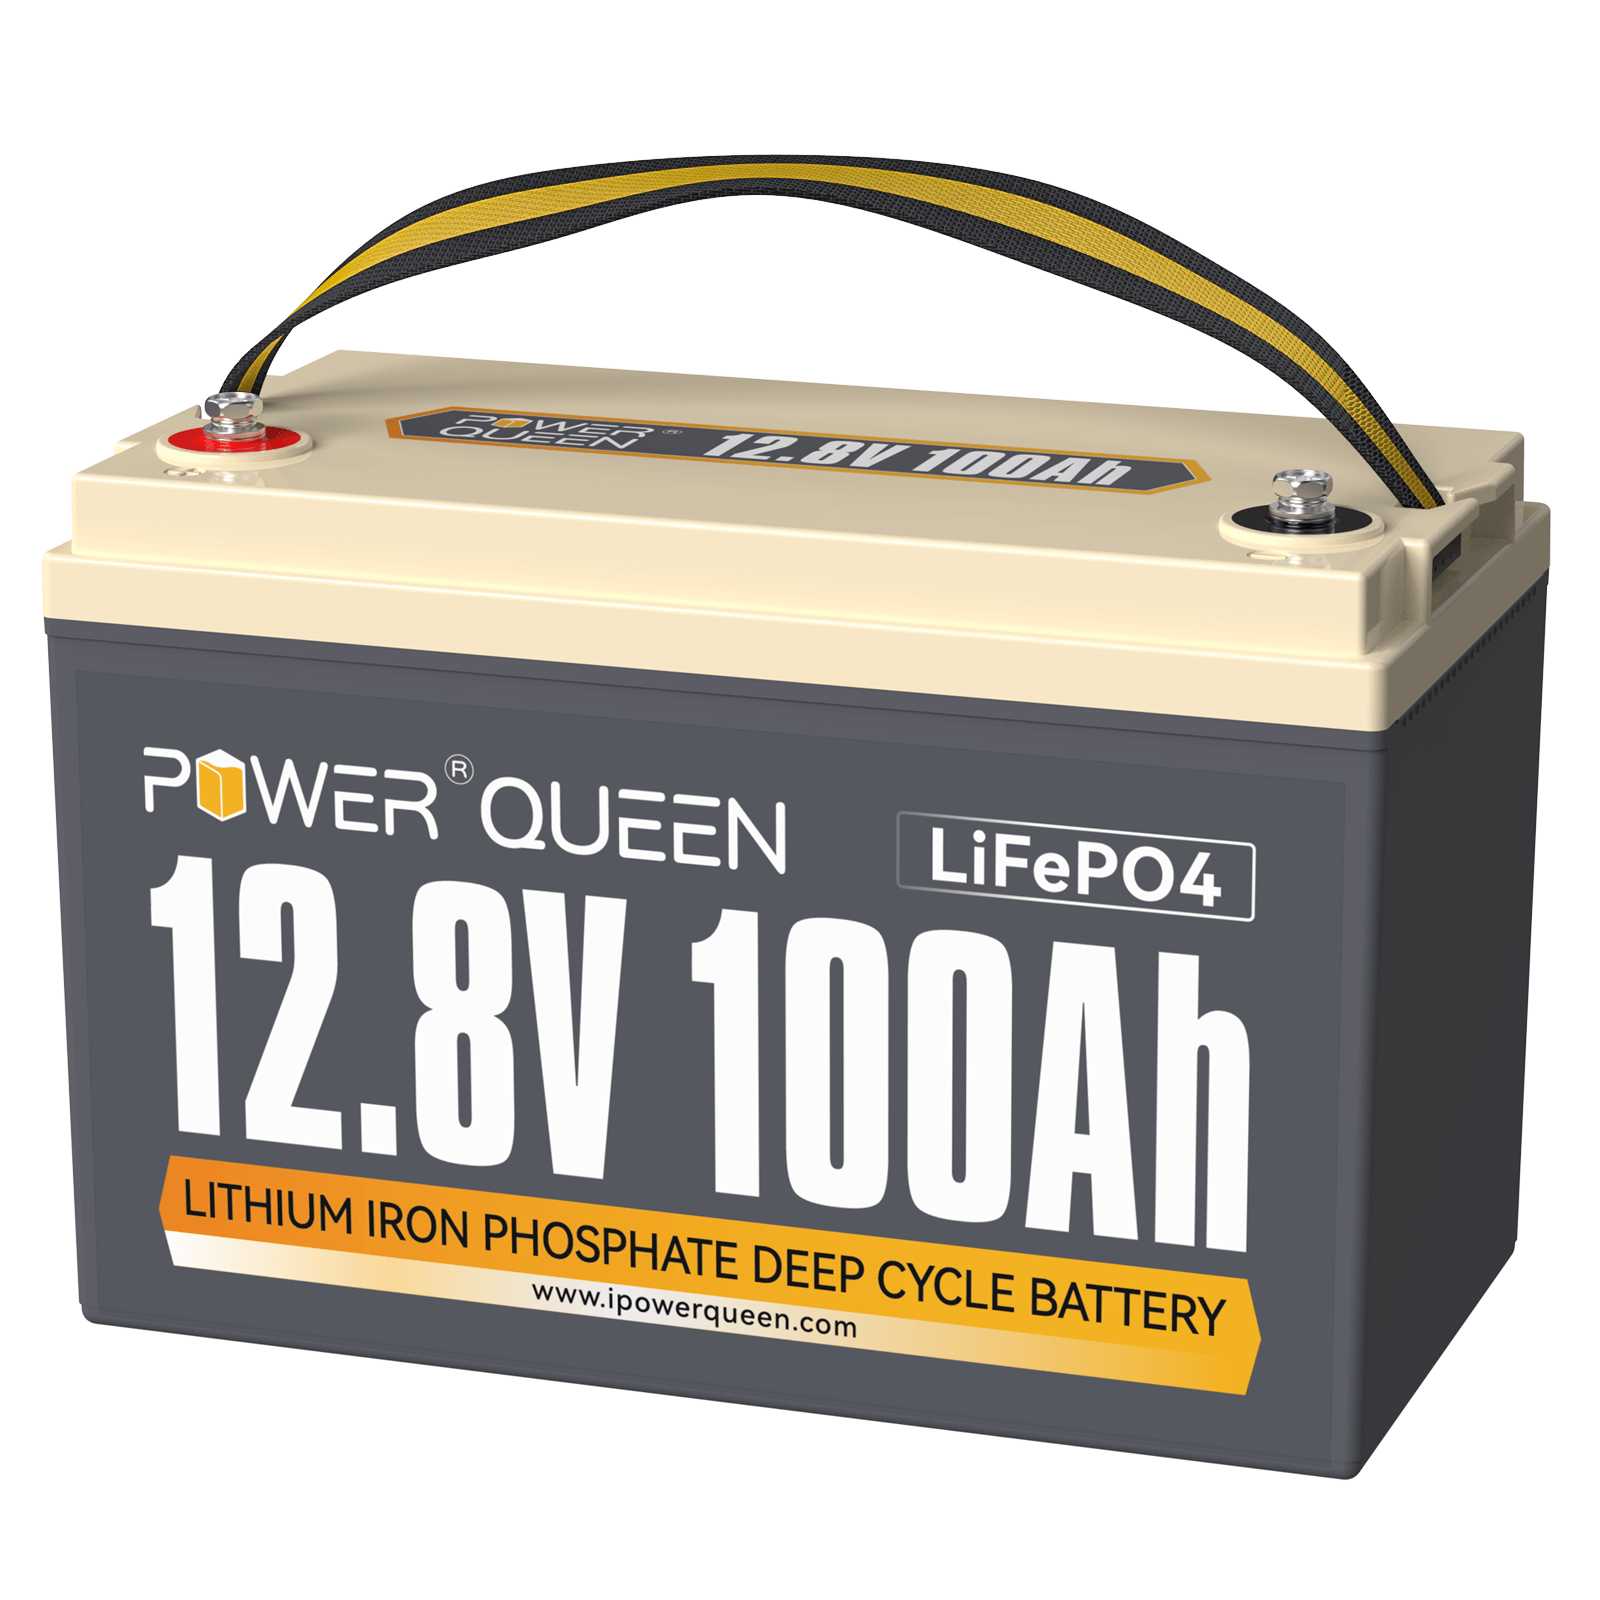 Power Queen 12.8V 100Ah LiFePO4 Battery, Built-in 100A BMS Power Queen